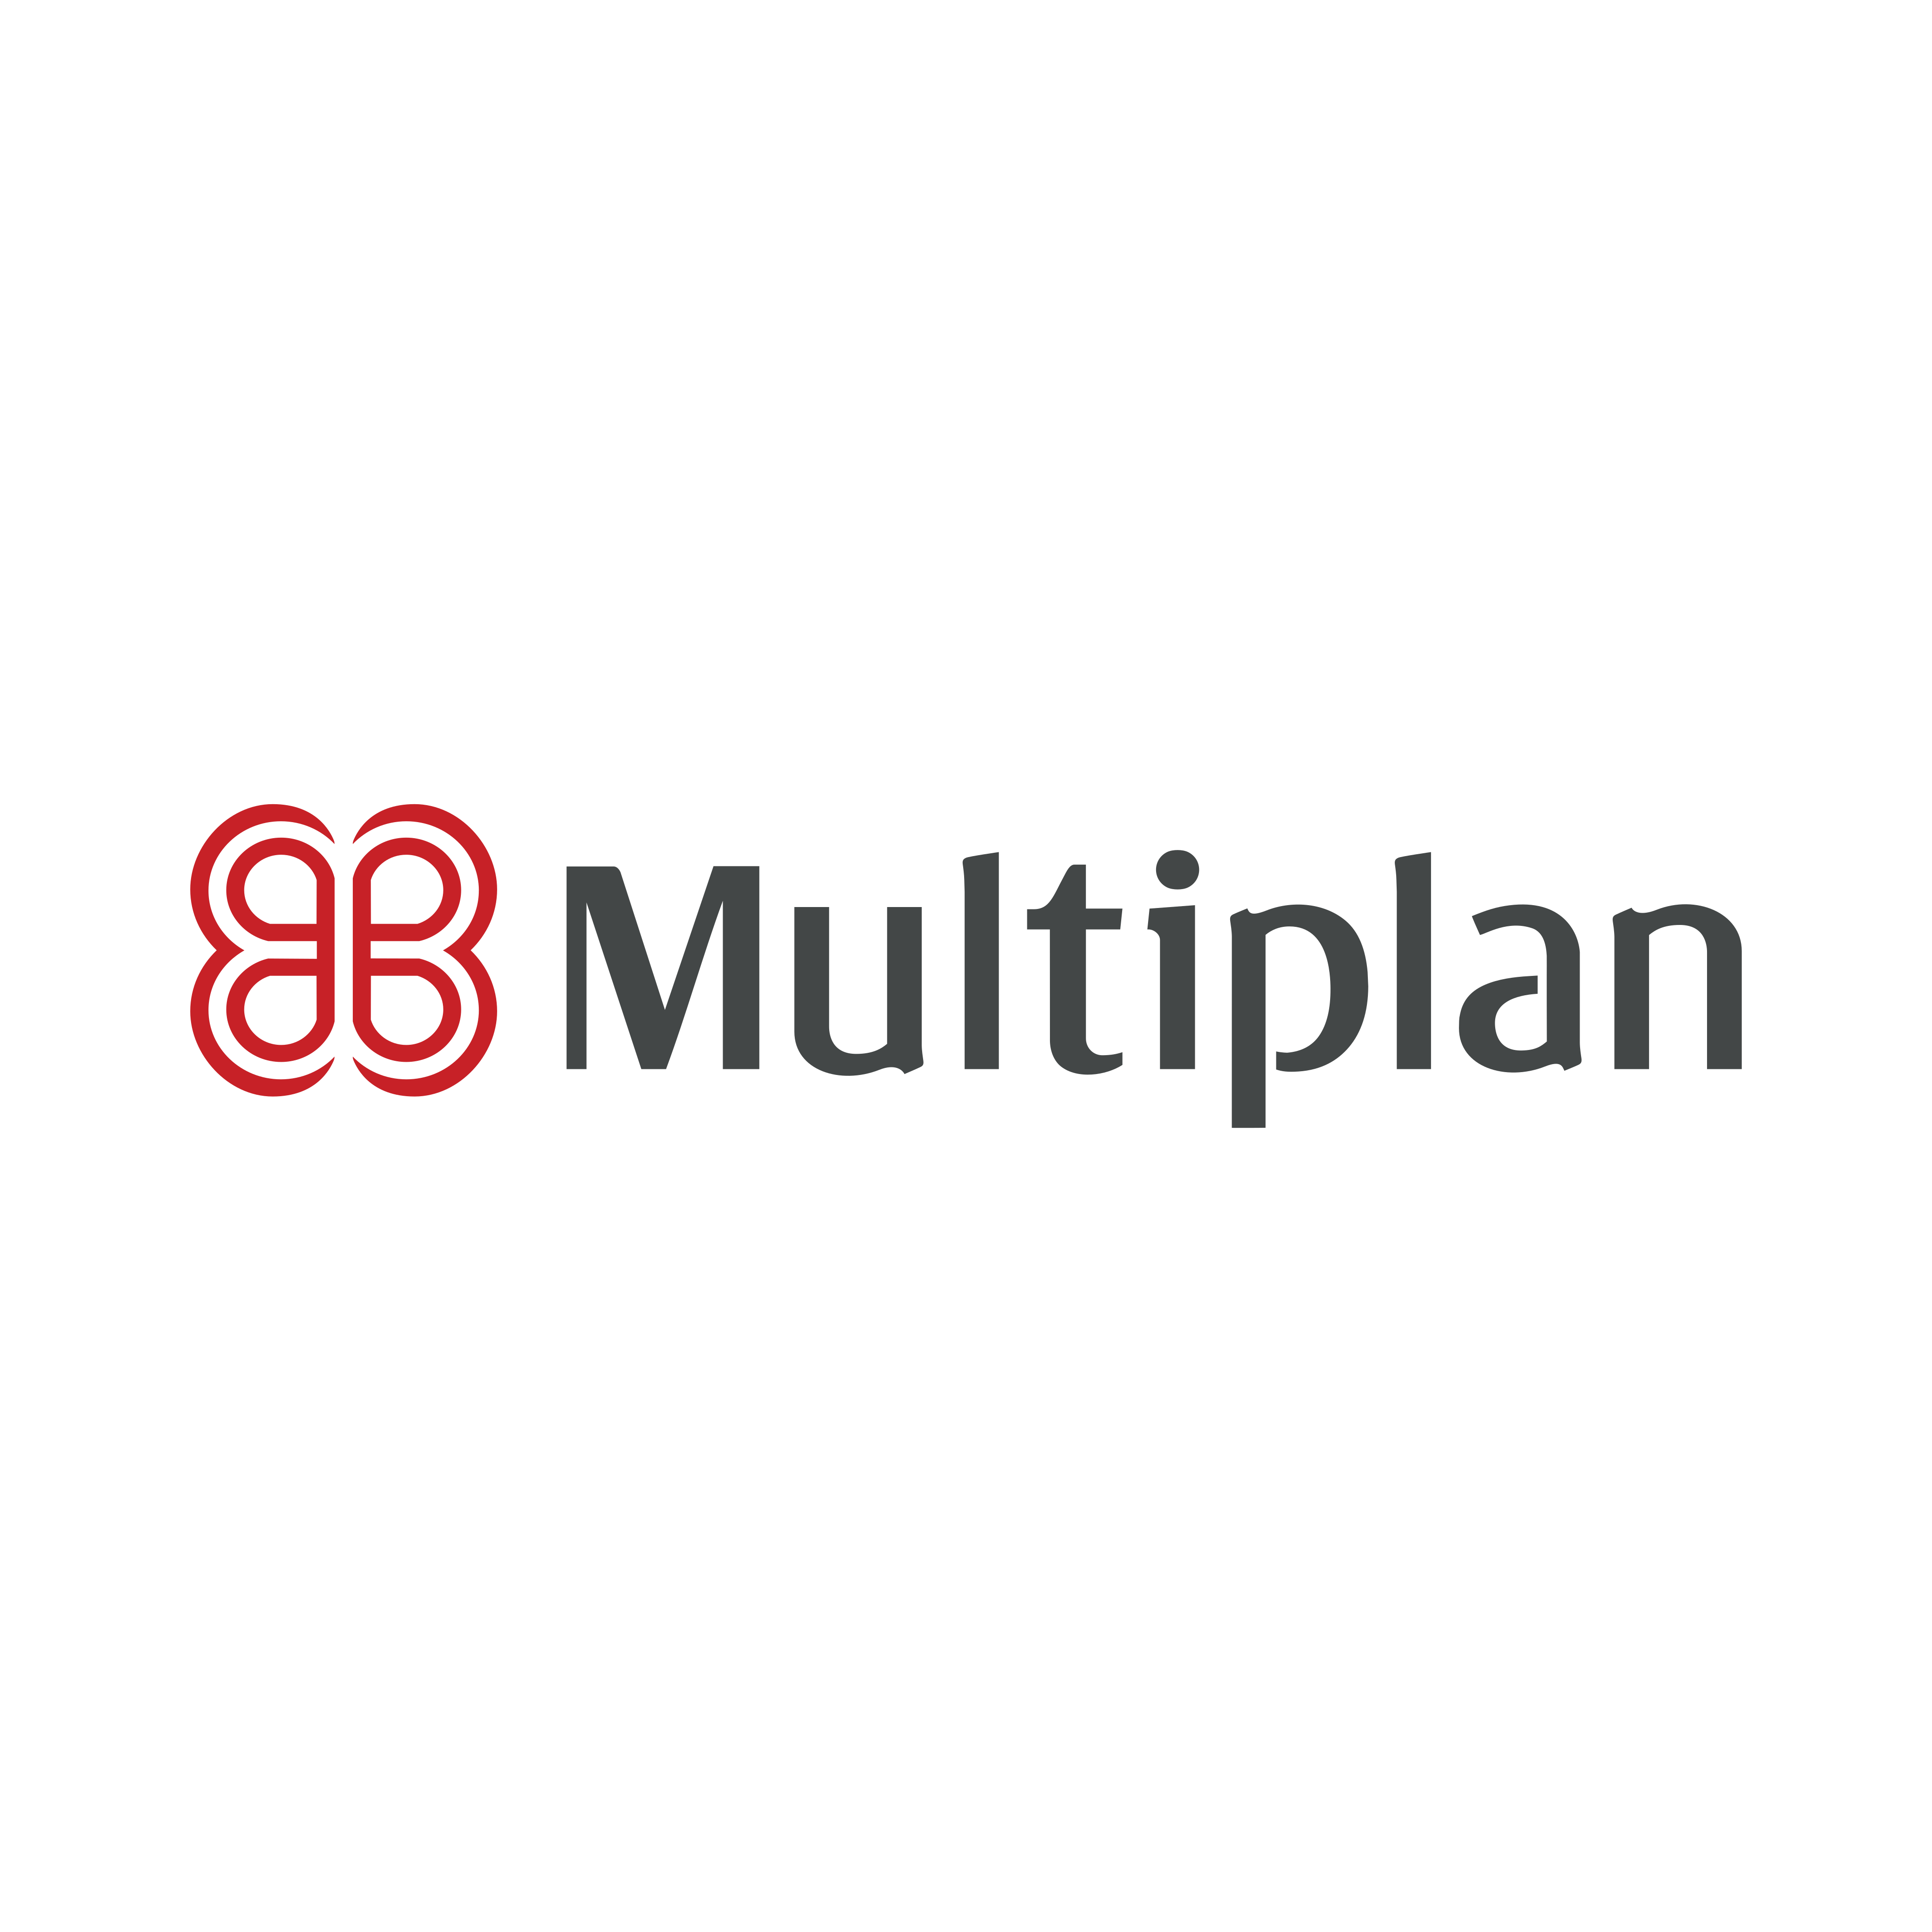 Multiplan Logo PNG.